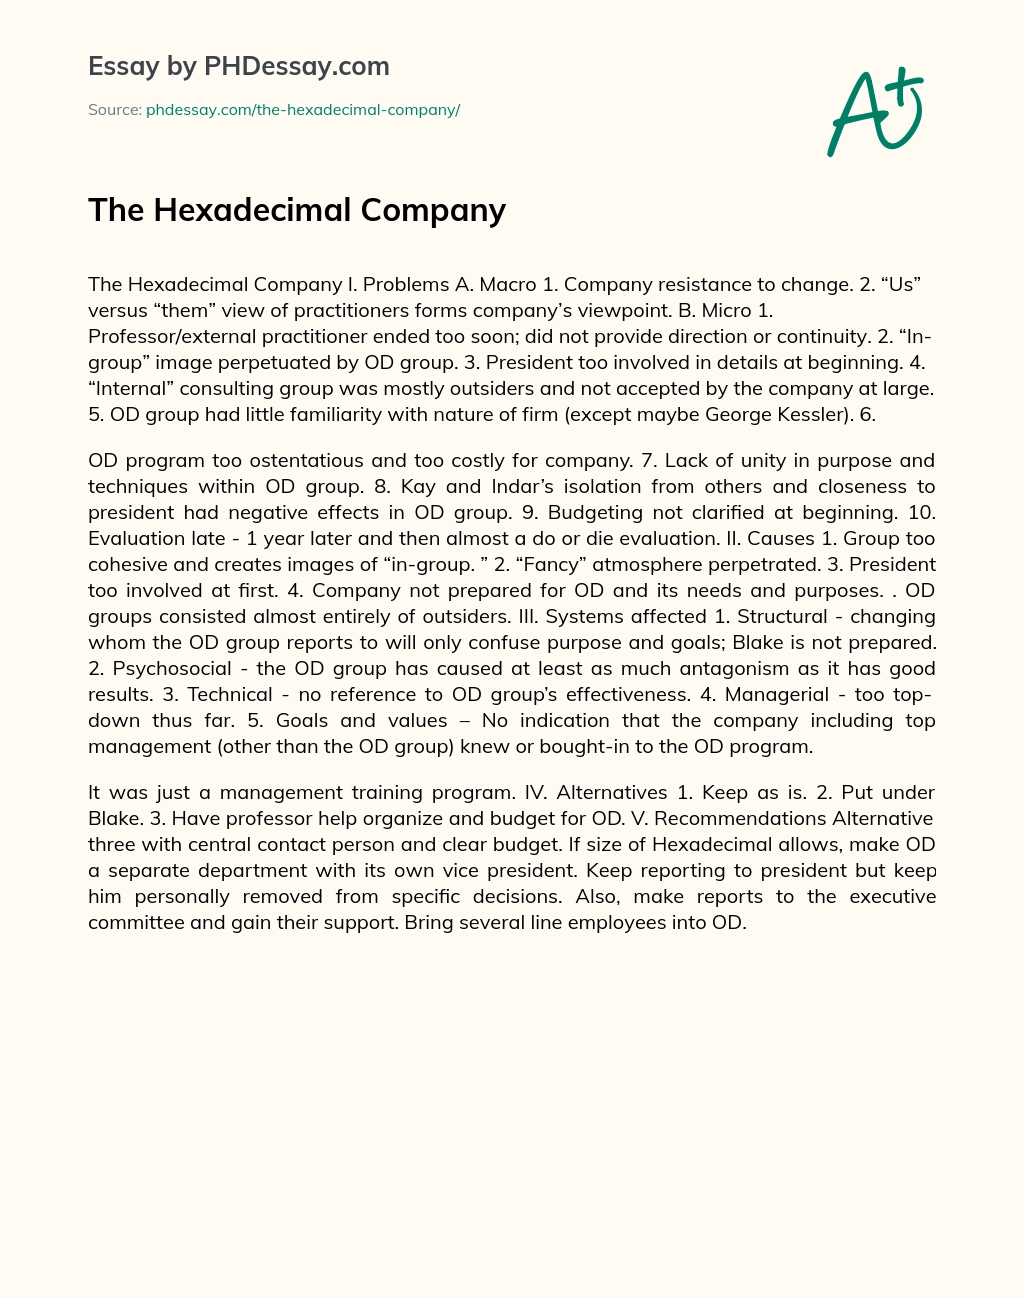 The Hexadecimal Company essay